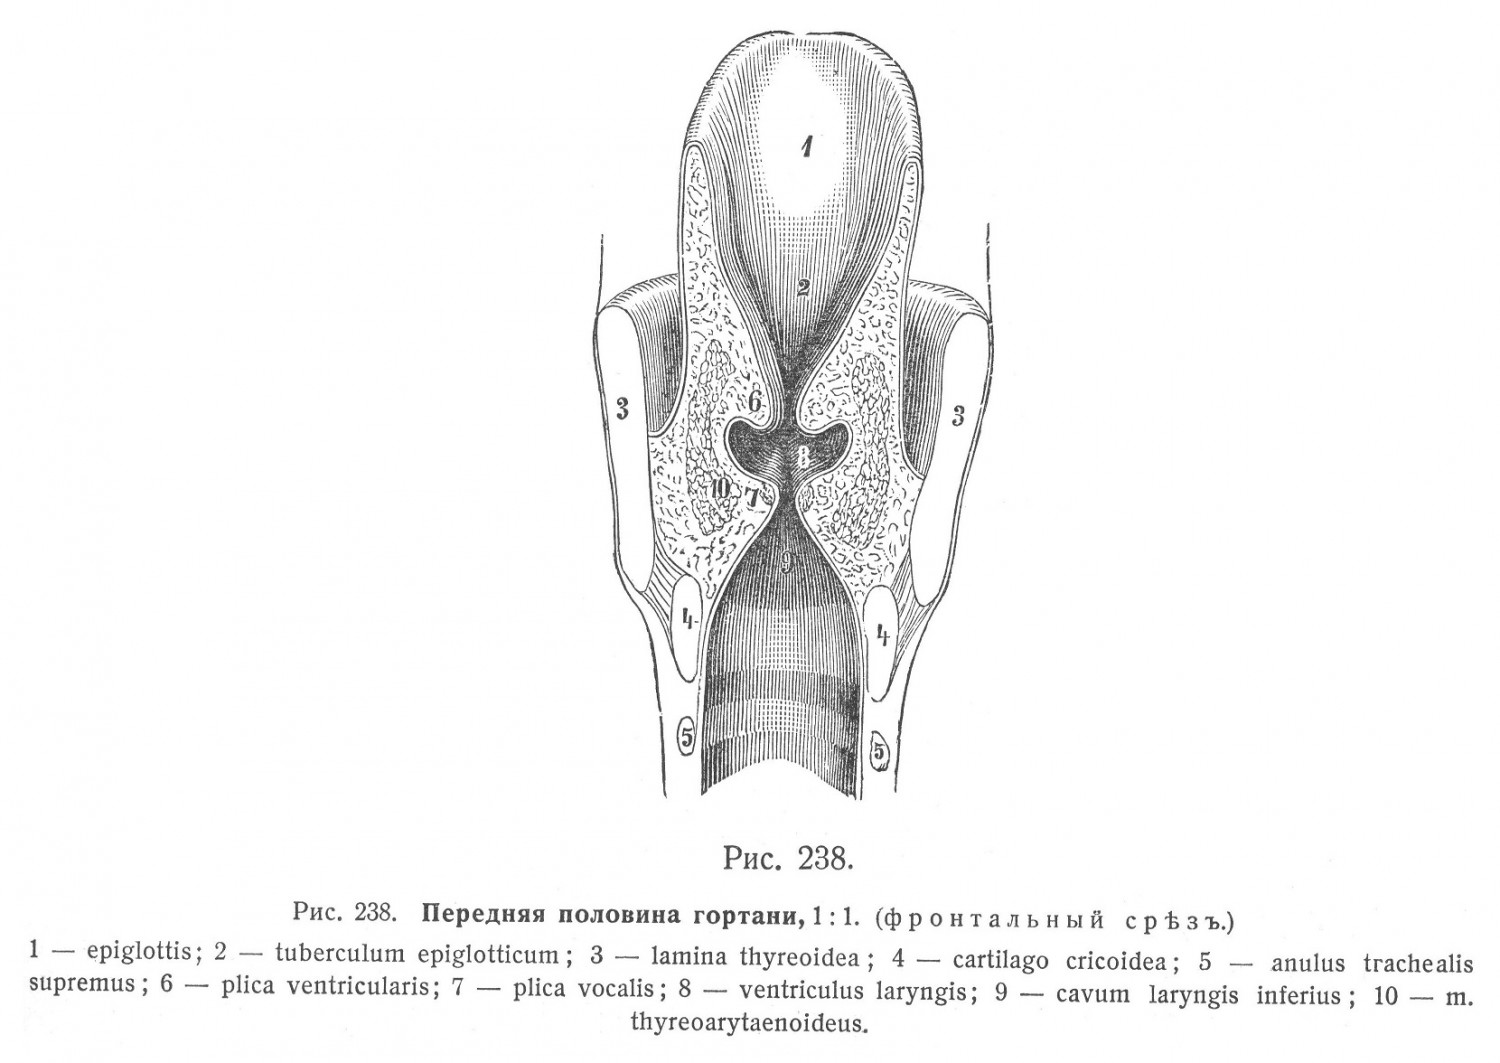 Слизистая оболочка гортани, tunica mucosa laryngis